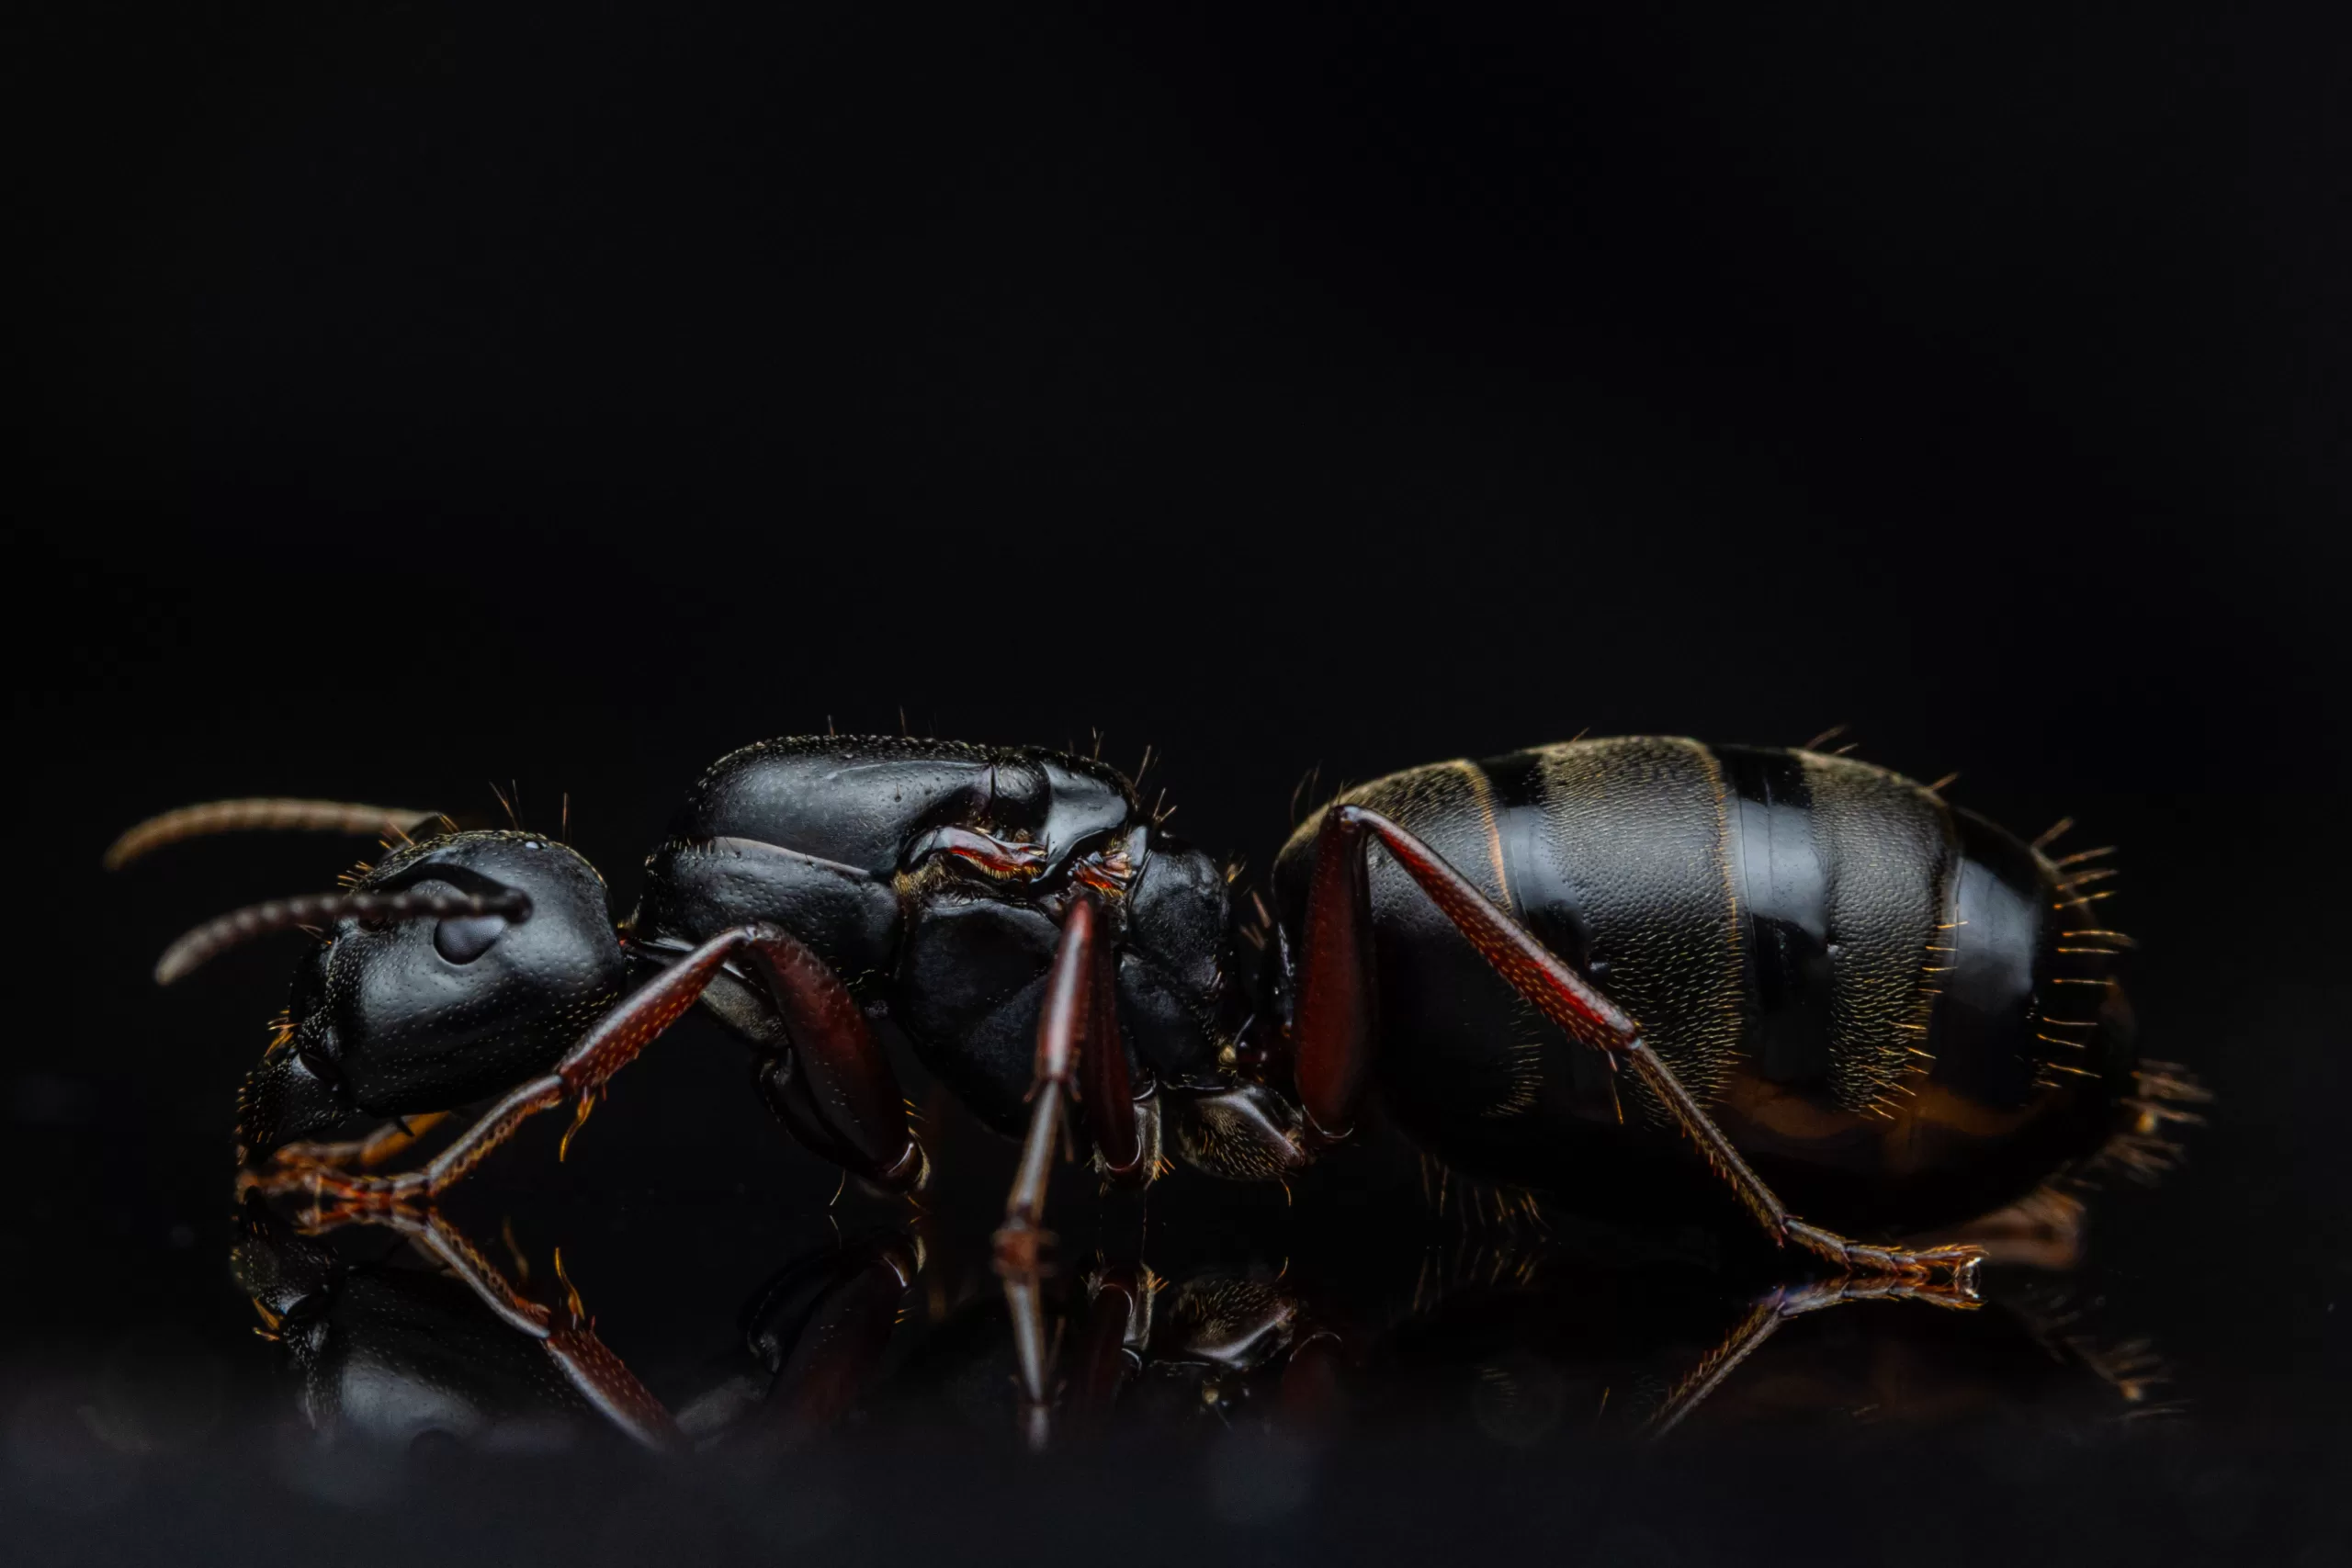 A Camponotus modoc queen.